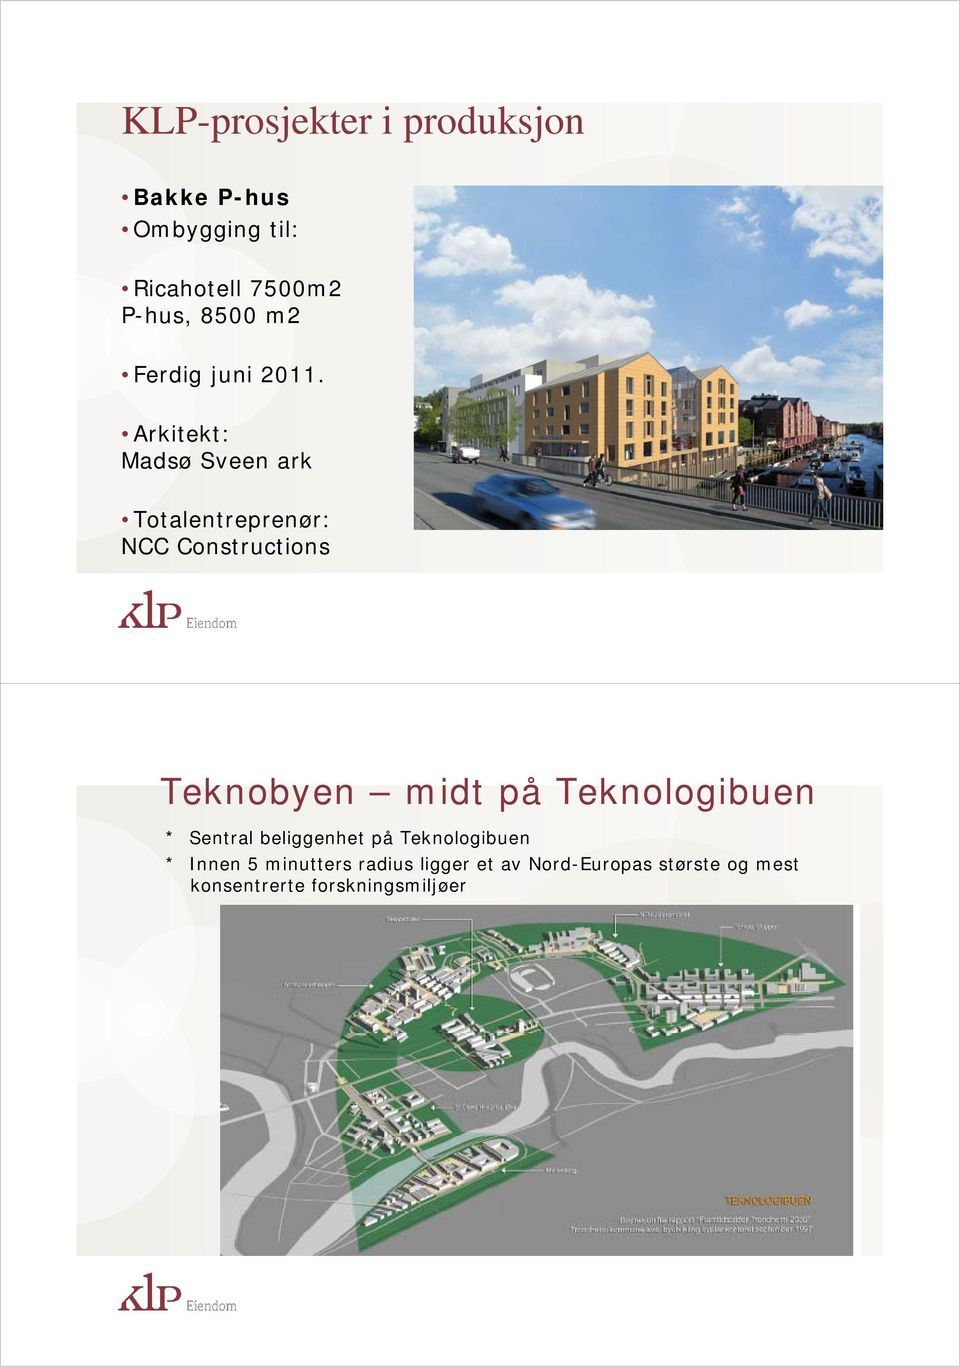 Arkitekt: Madsø Sveen ark Totalentreprenør: NCC Constructions Teknobyen midt på